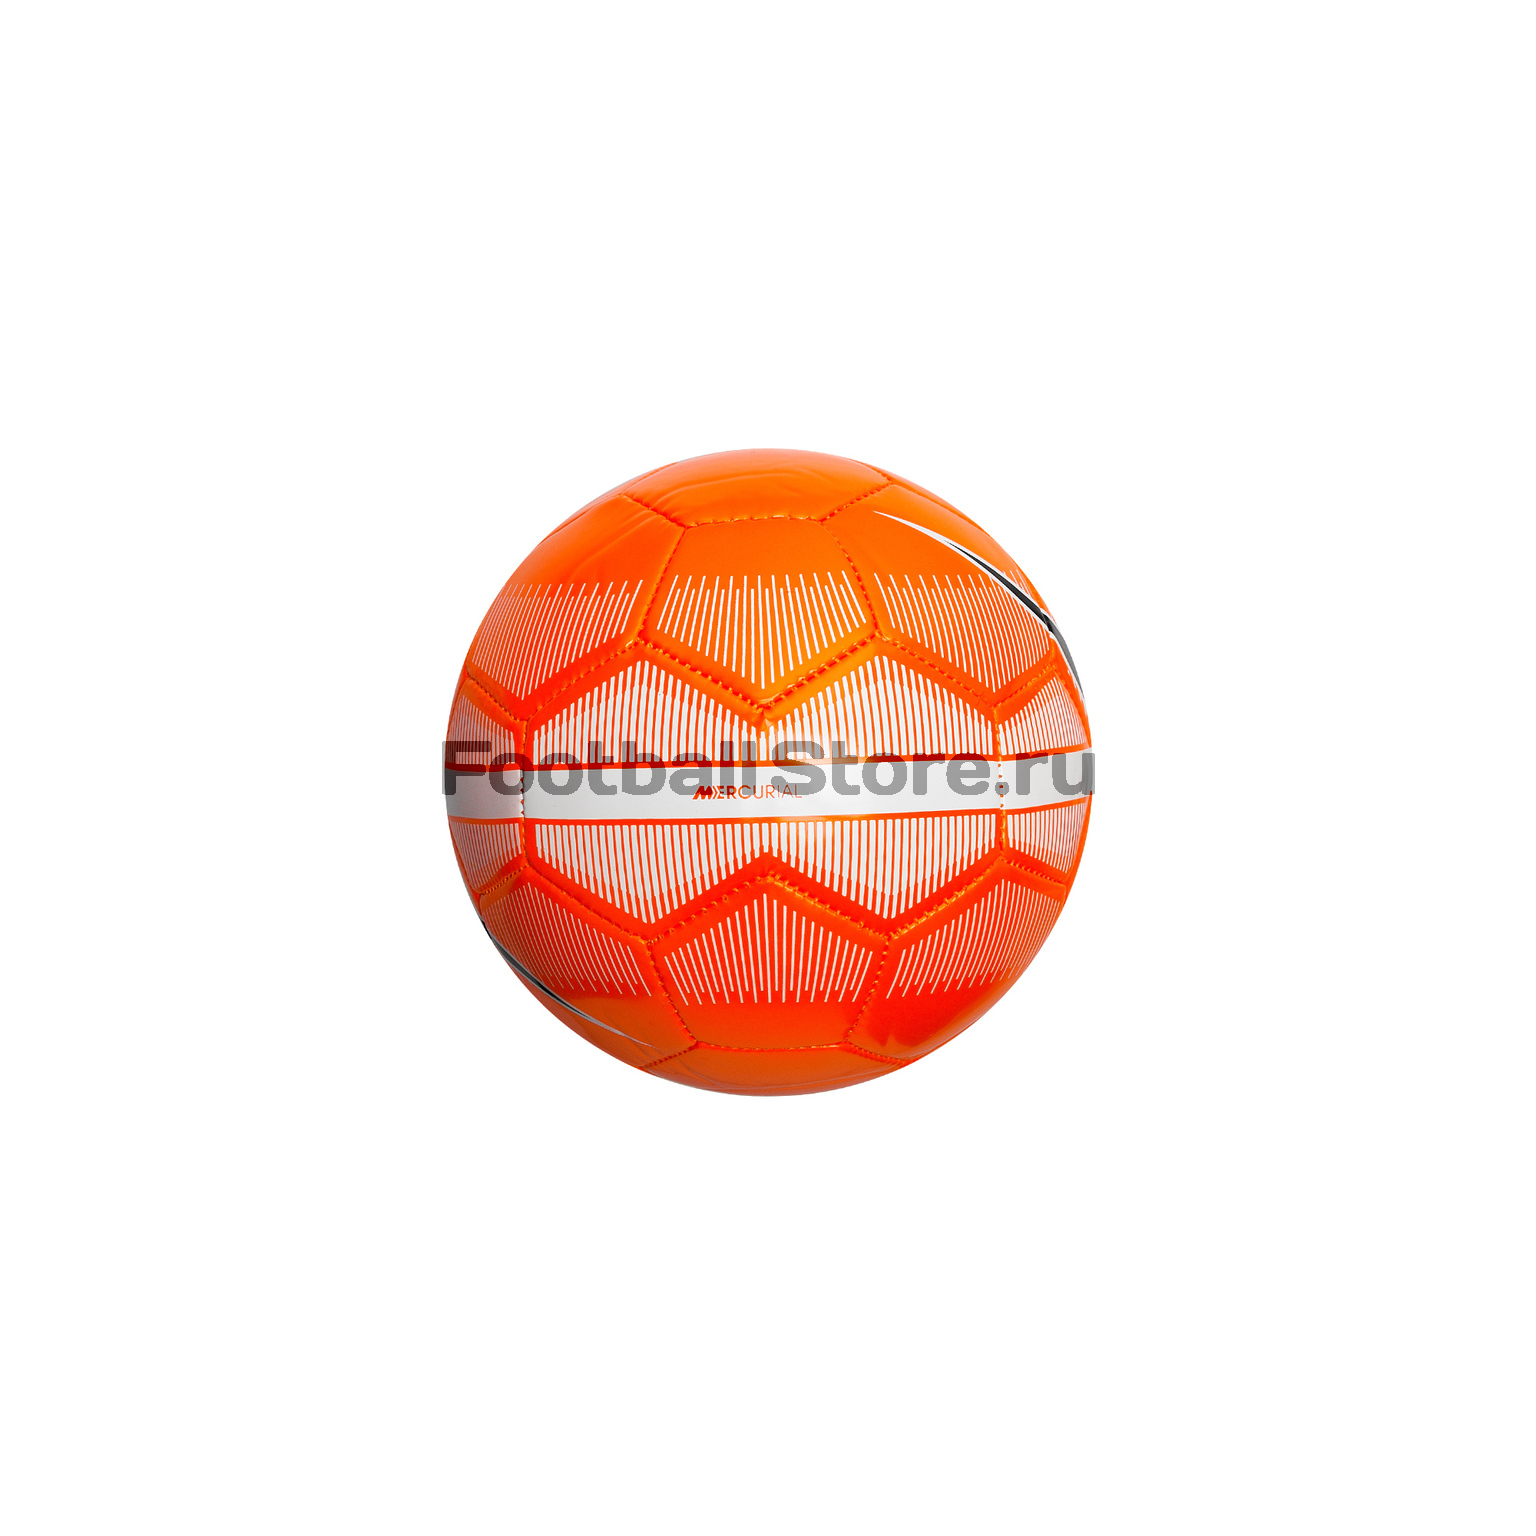 Мяч сувенирный Nike Mercurial Skills SC3340-809